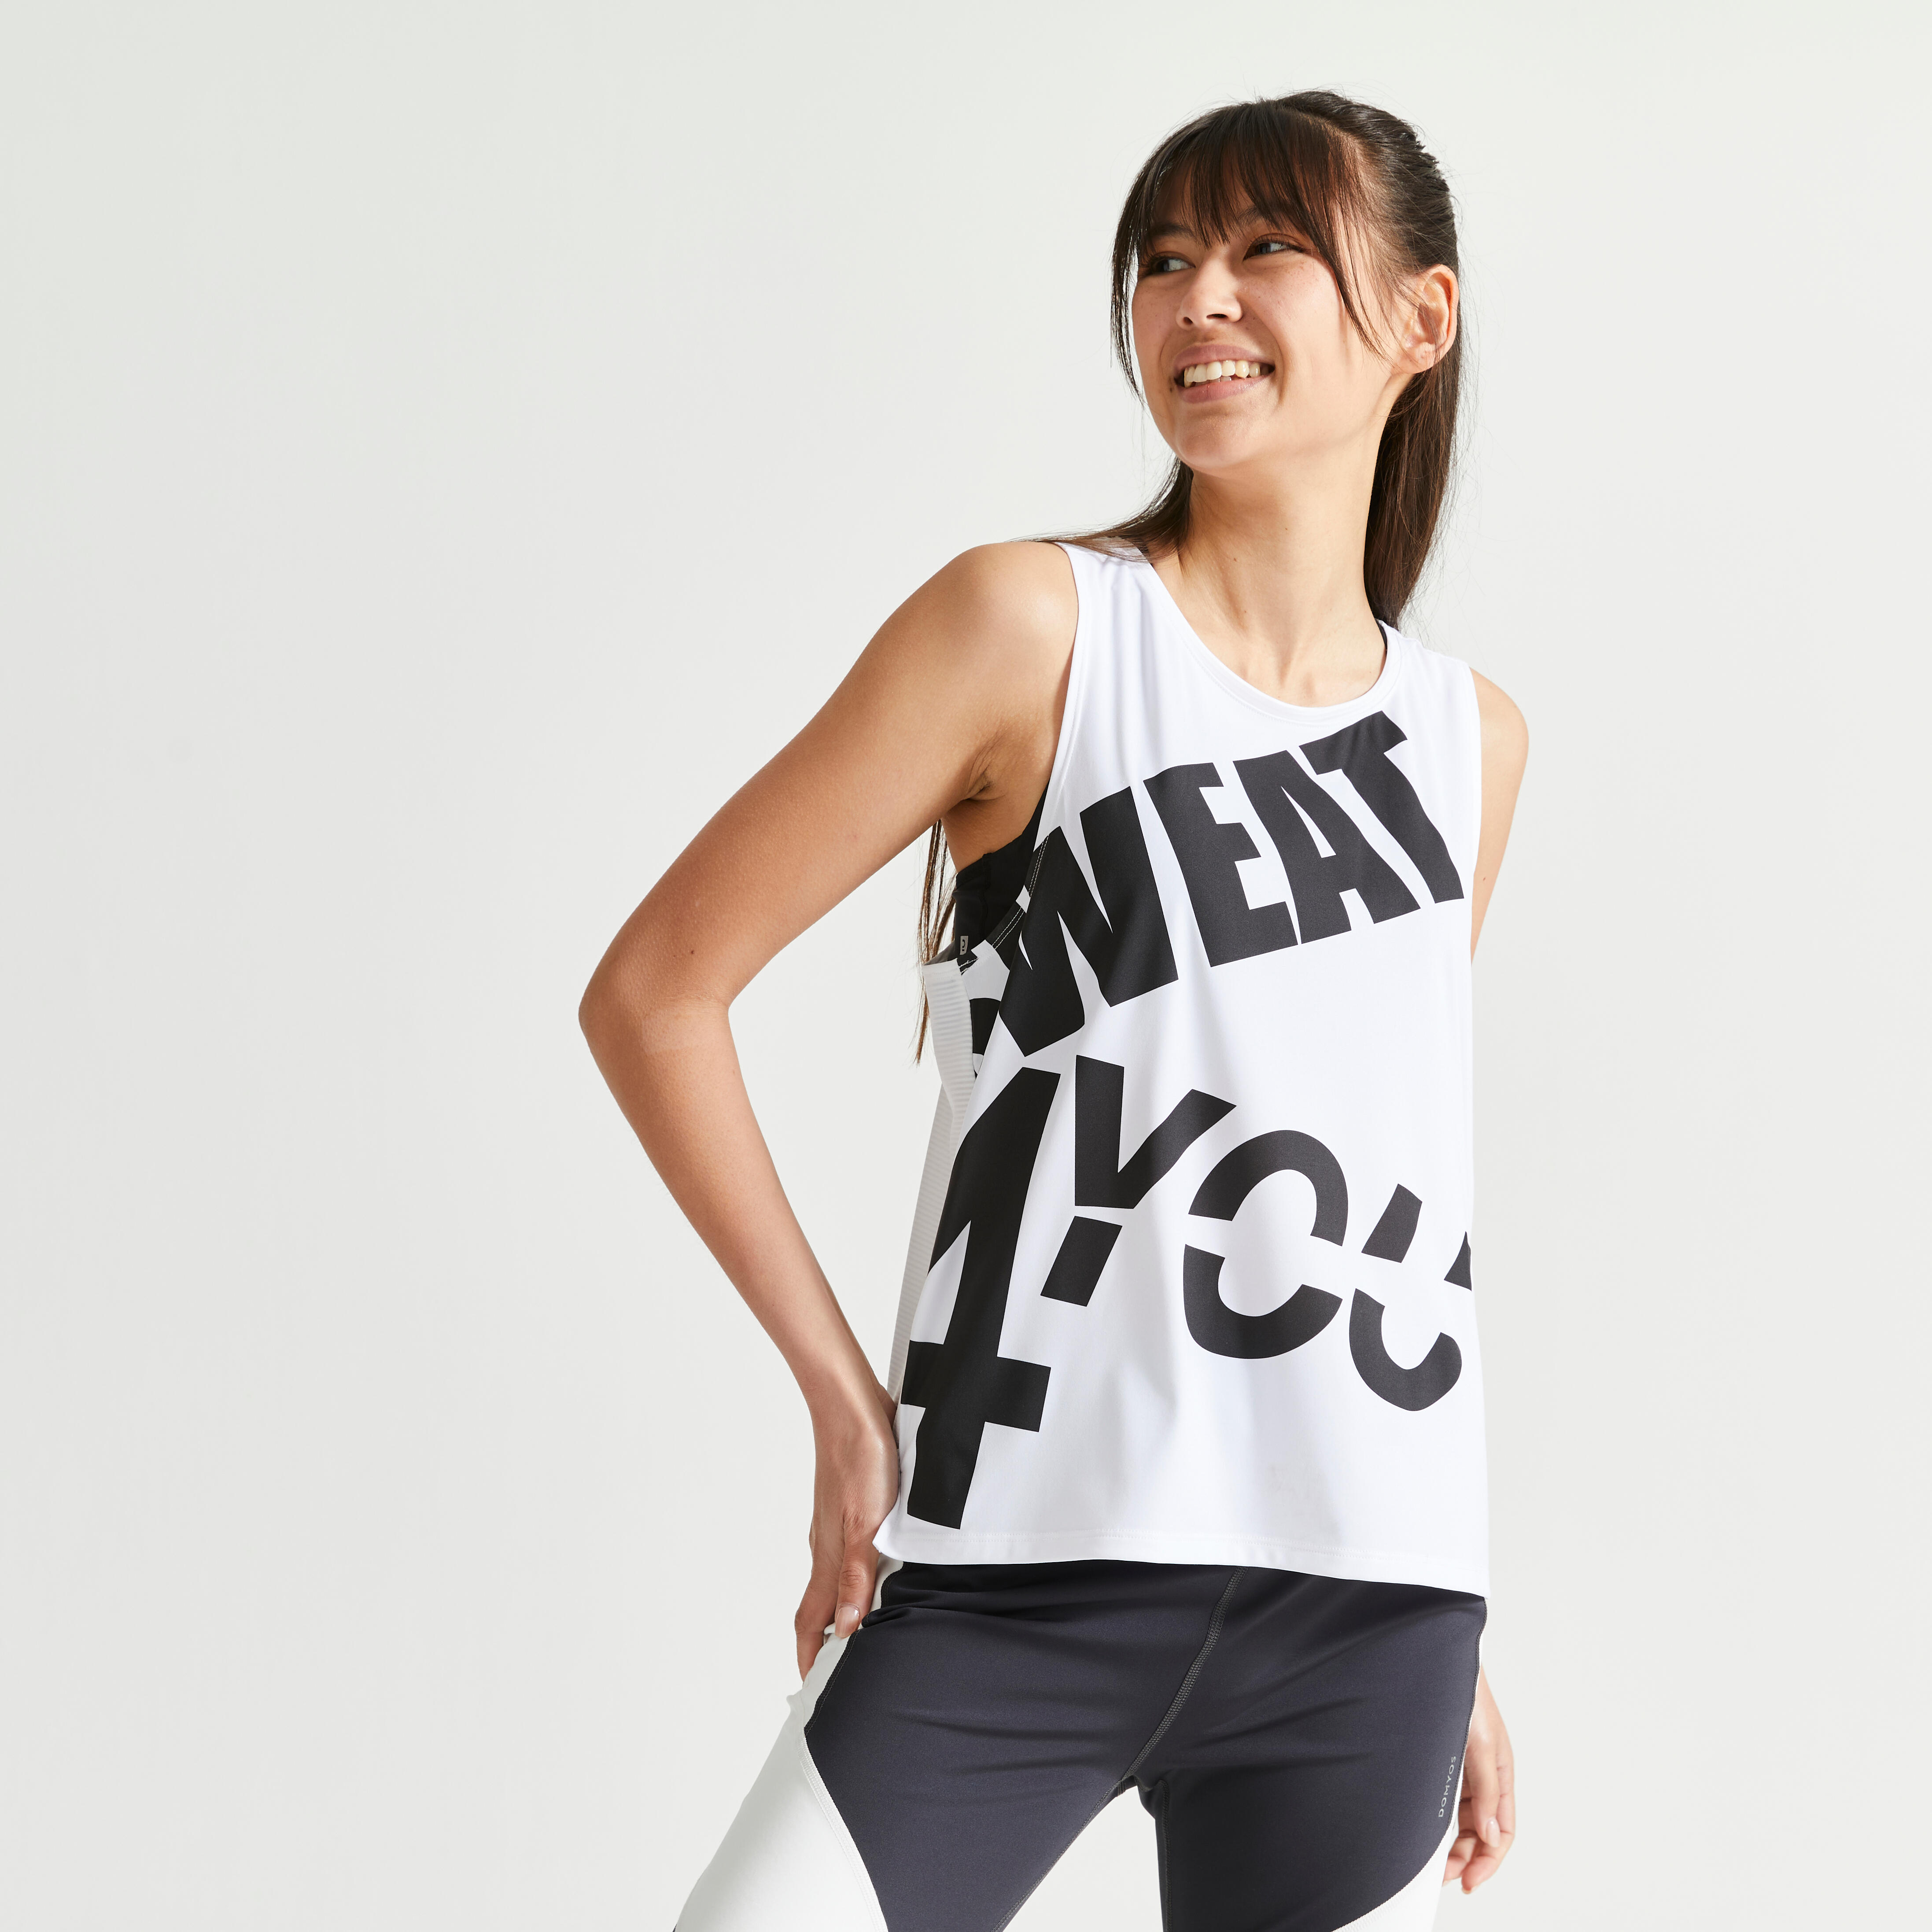 Parabler Damen atmungsaktive Funktionelle Sport Training Fitness T-Shirt Kurzarm V-Ausschnitt Laufhemd Yoga Top Loose Fit Laufshirt für Frauen 